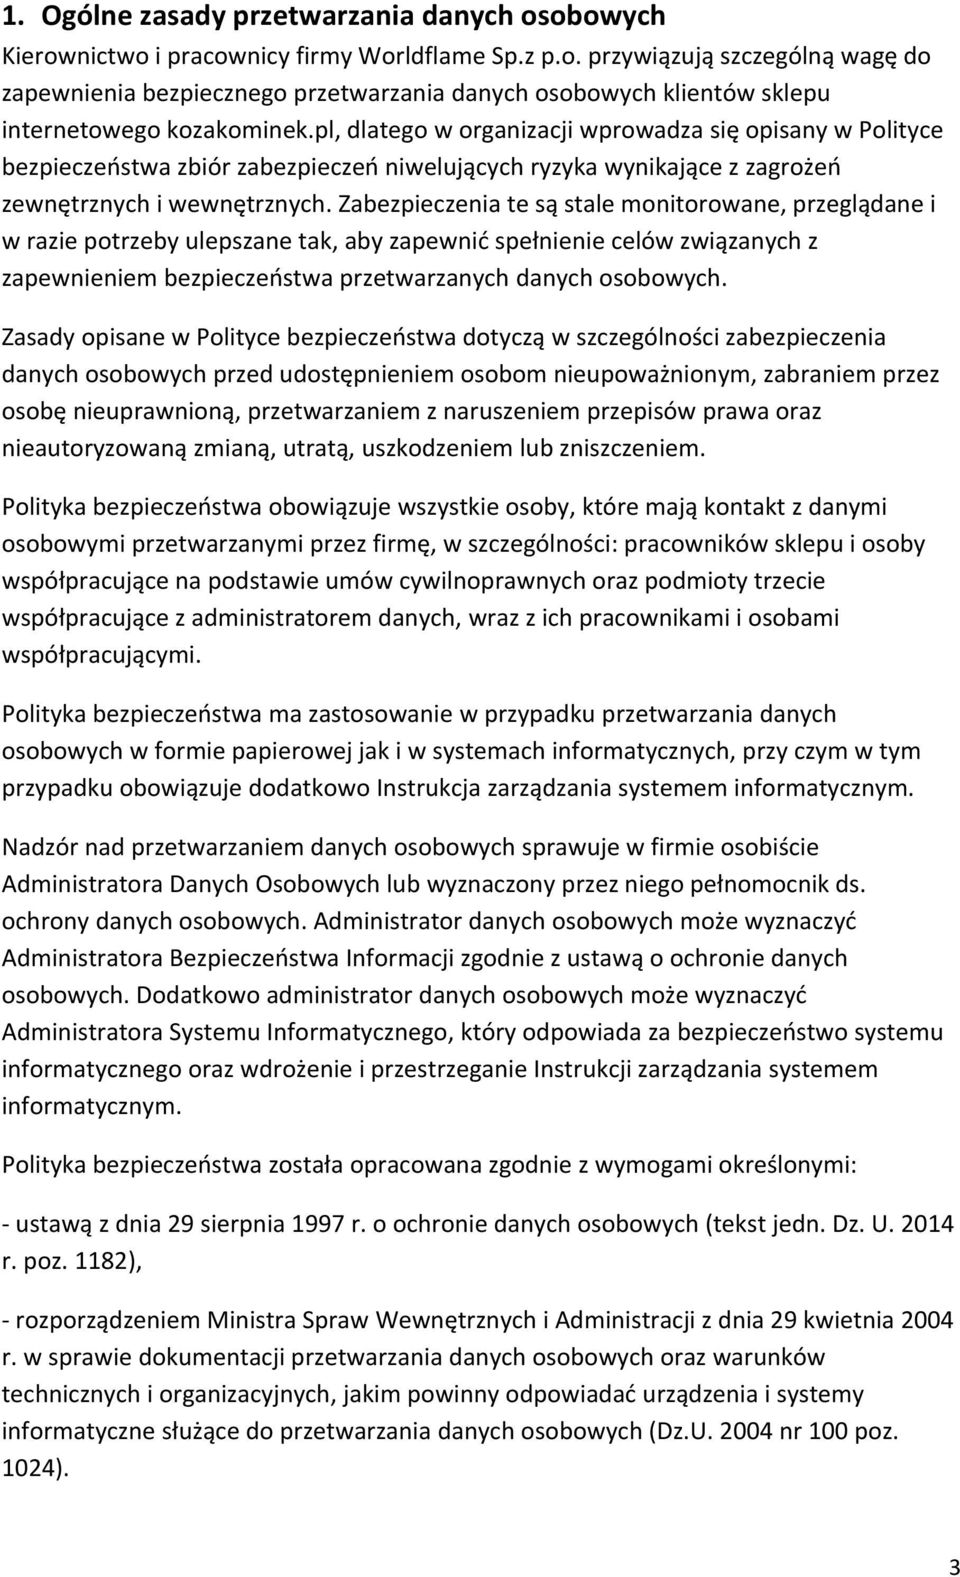 Polityka Bezpieczeństwa Danych Osobowych. w sklepie internetowym  kozakominek.pl prowadzonym przez firmę Worldflame Sp. z o. o. - PDF Darmowe  pobieranie